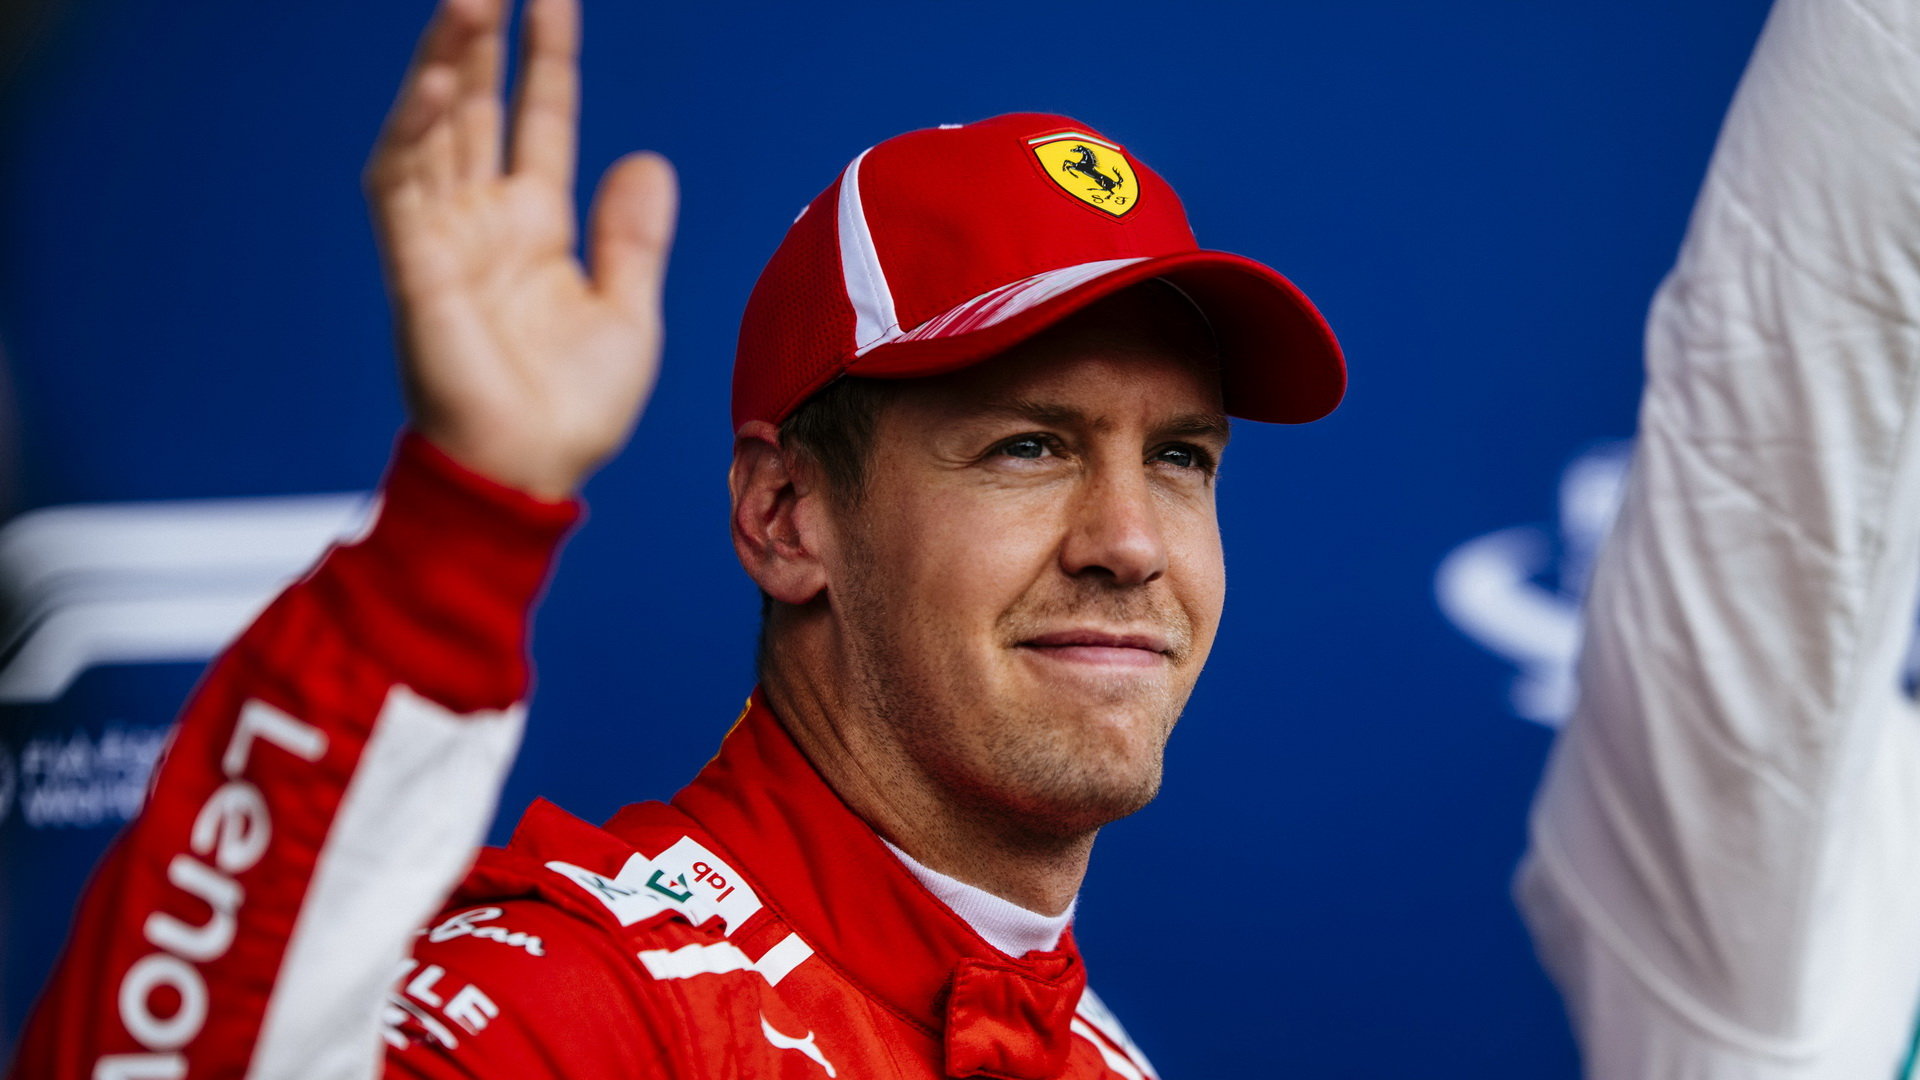 Ferrari ke konci sezóny začíná docházet dech, Vettel burcuje k usilovné práci a zlepšení vozu